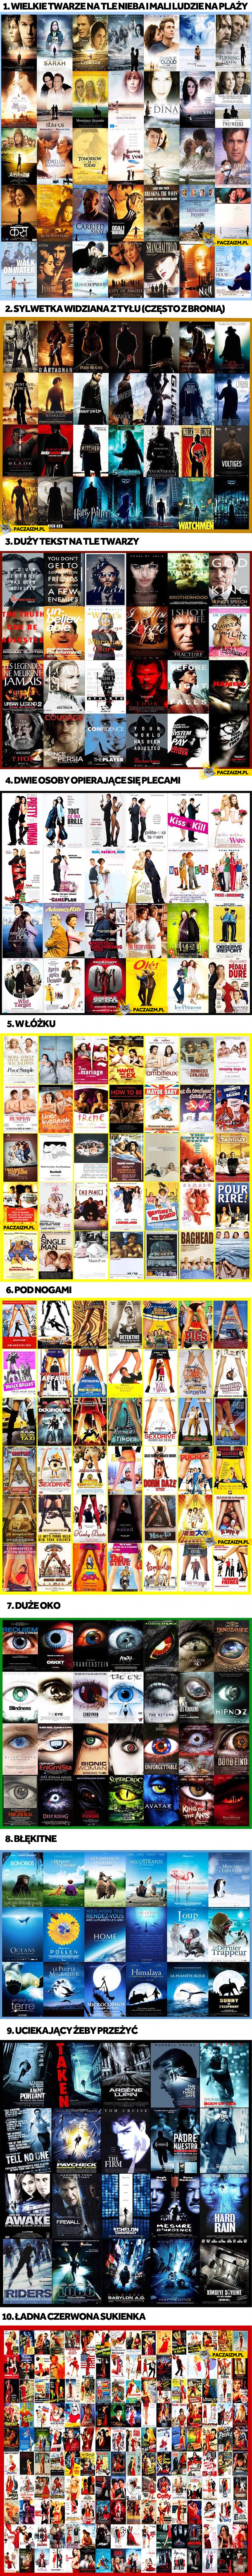 Główne nurty plakatów filmowych